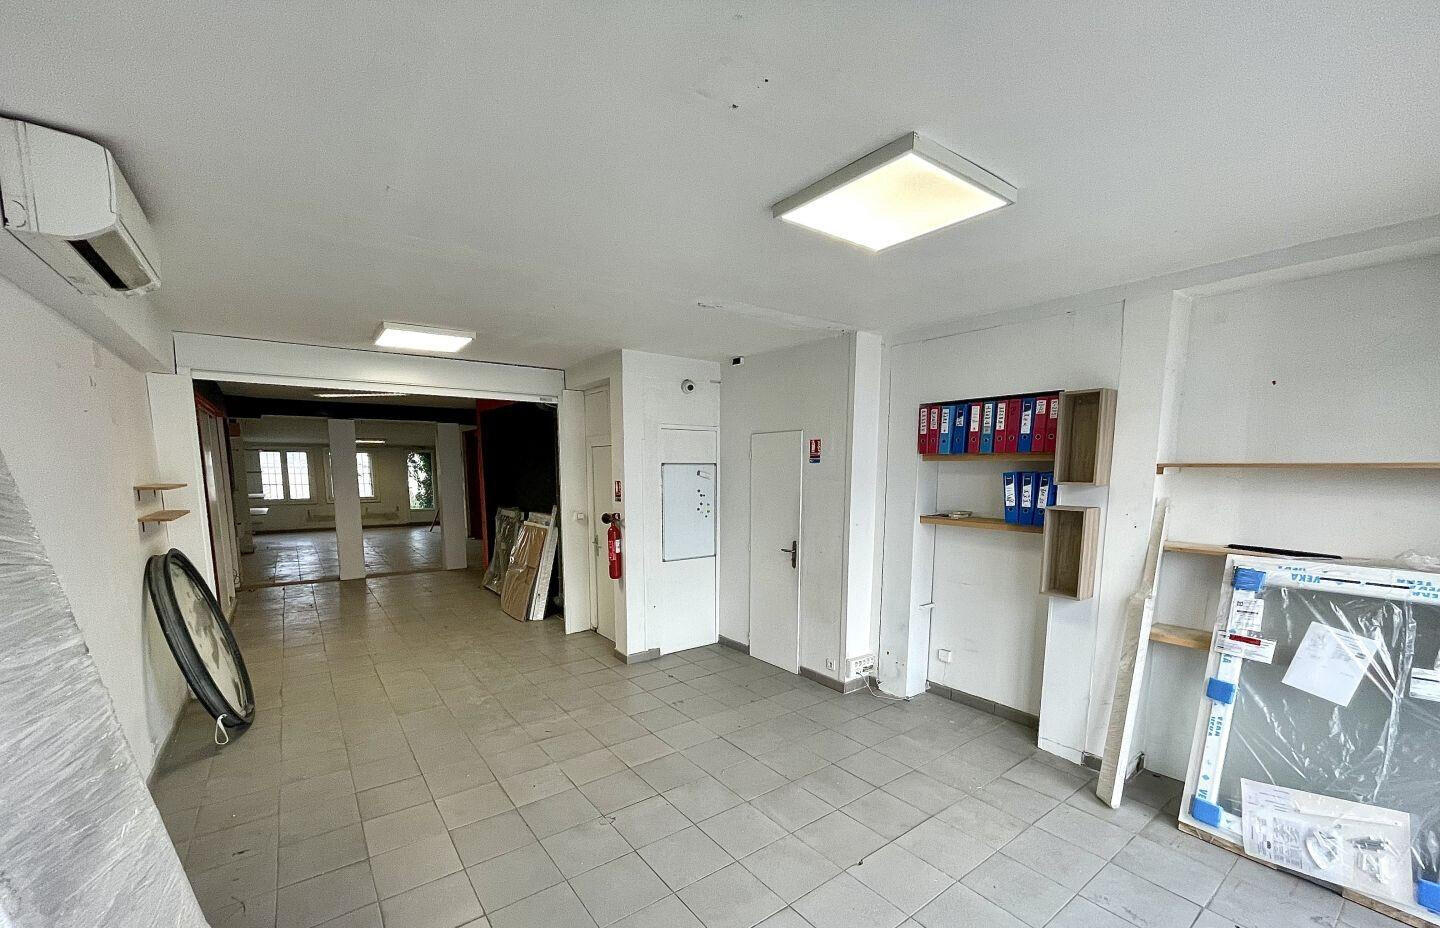 Vente bureaux 170m² ZA de Fontcouverte à Avignon